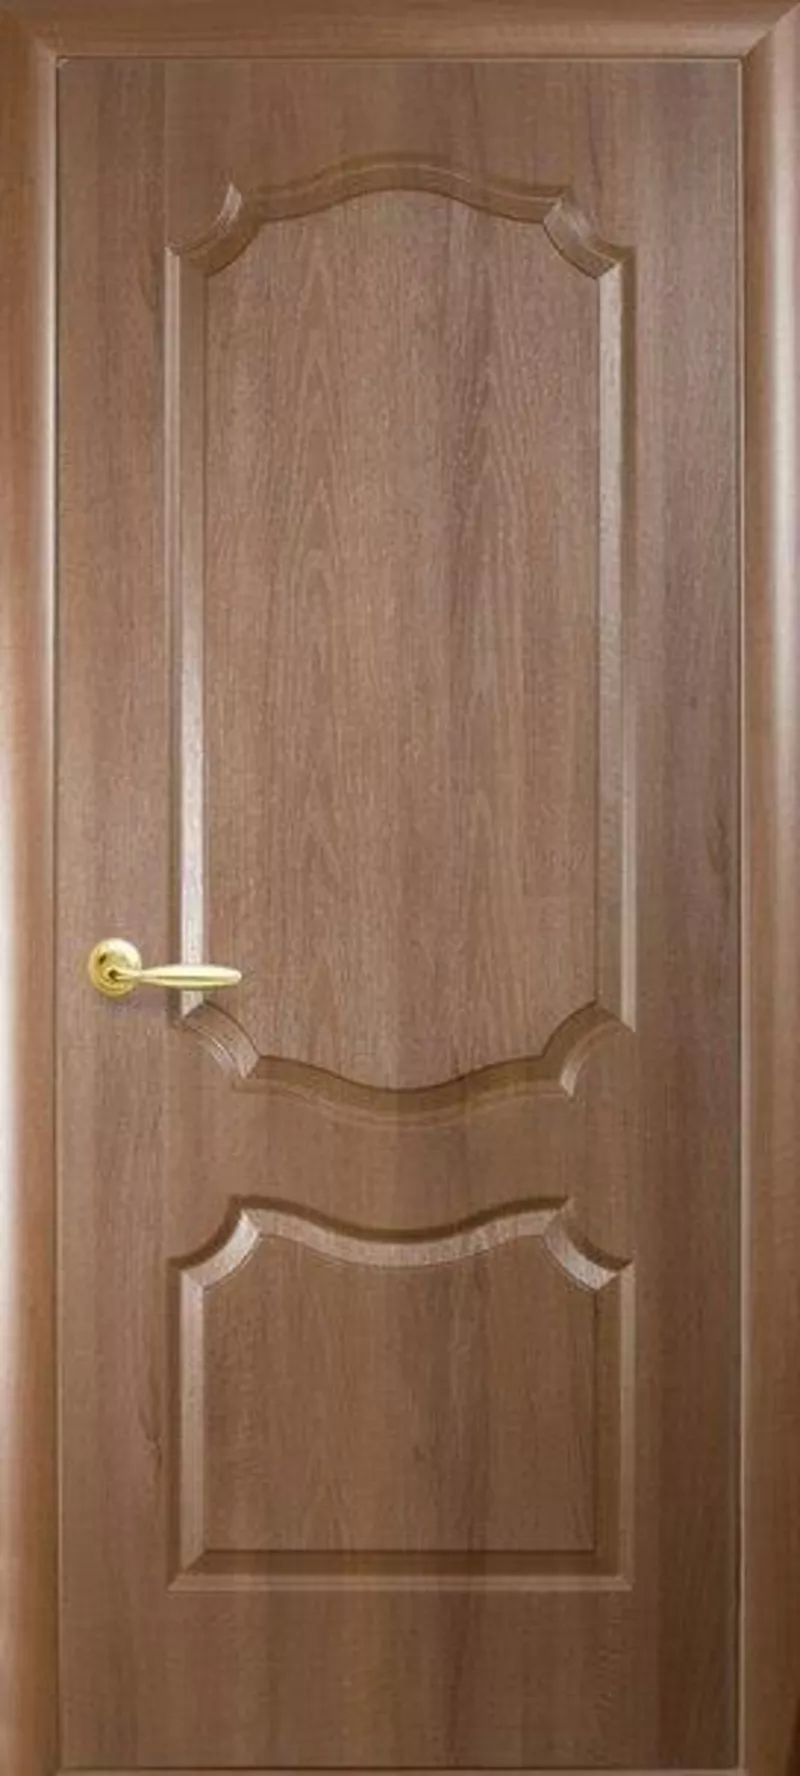 В РАССРОЧКУ И В КРЕДИТ! Межкомнатные двери для любого вида помещения в Алматы купить недорого. 6